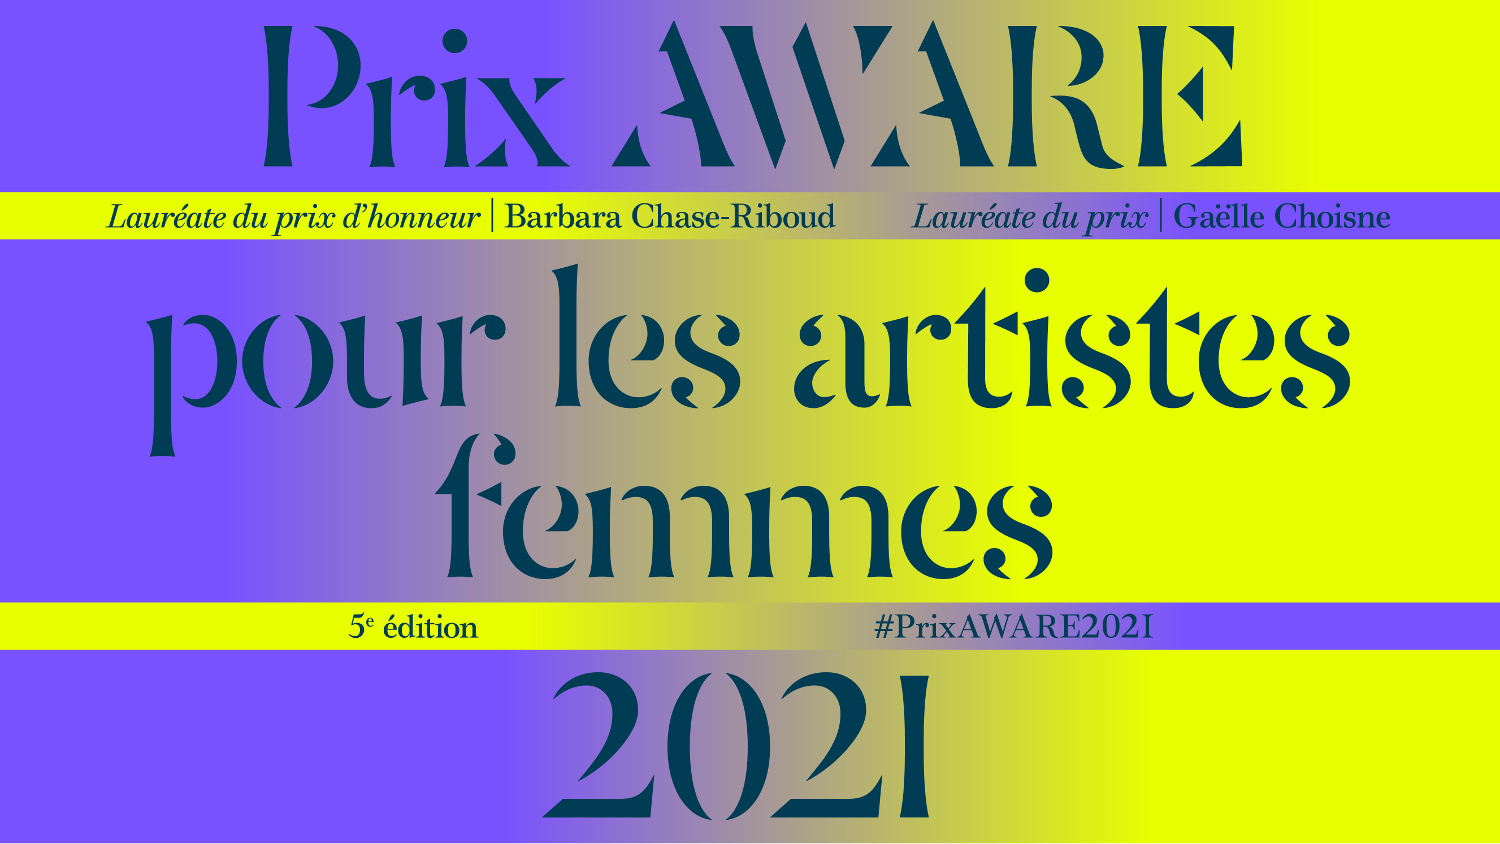 2021 - AWARE Artistes femmes / women artists